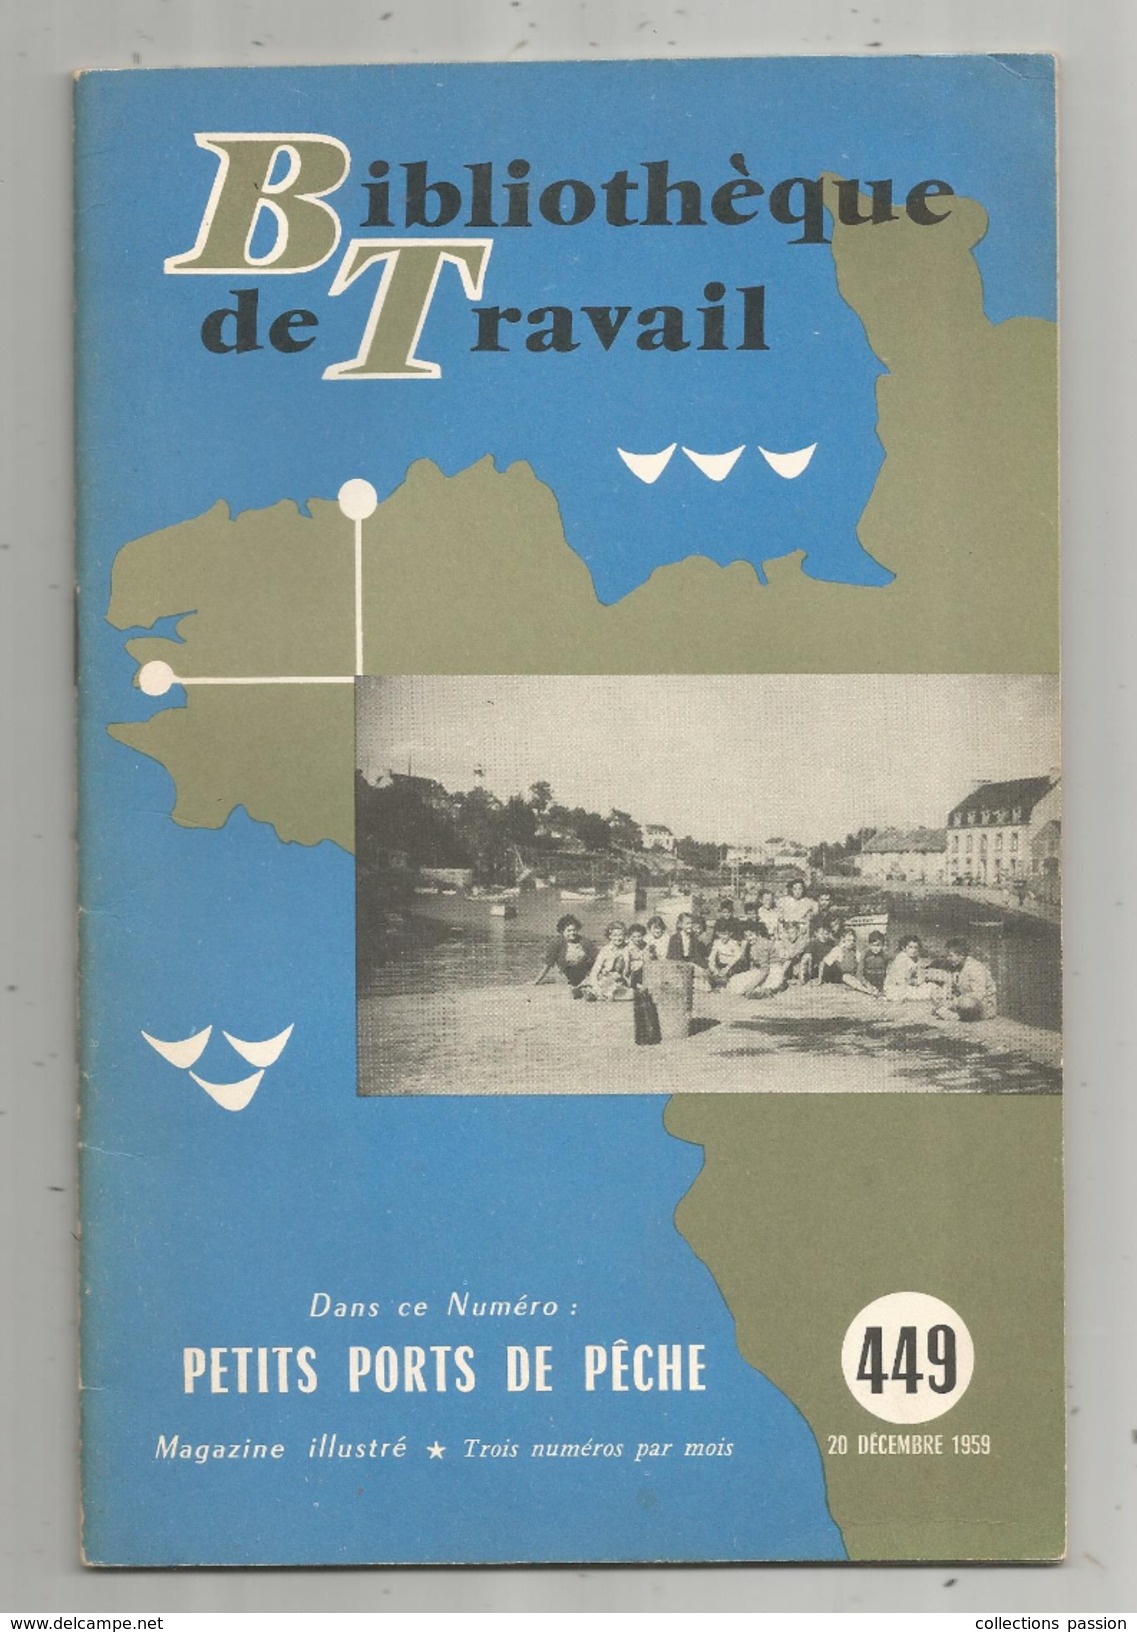 Bibliothéque De Travail, N° 449, 1959, Petits PORTS De PÊCHE, 28 Pages, Photos, Plans, Illustratration, Frais Fr : 2.45& - Jacht/vissen